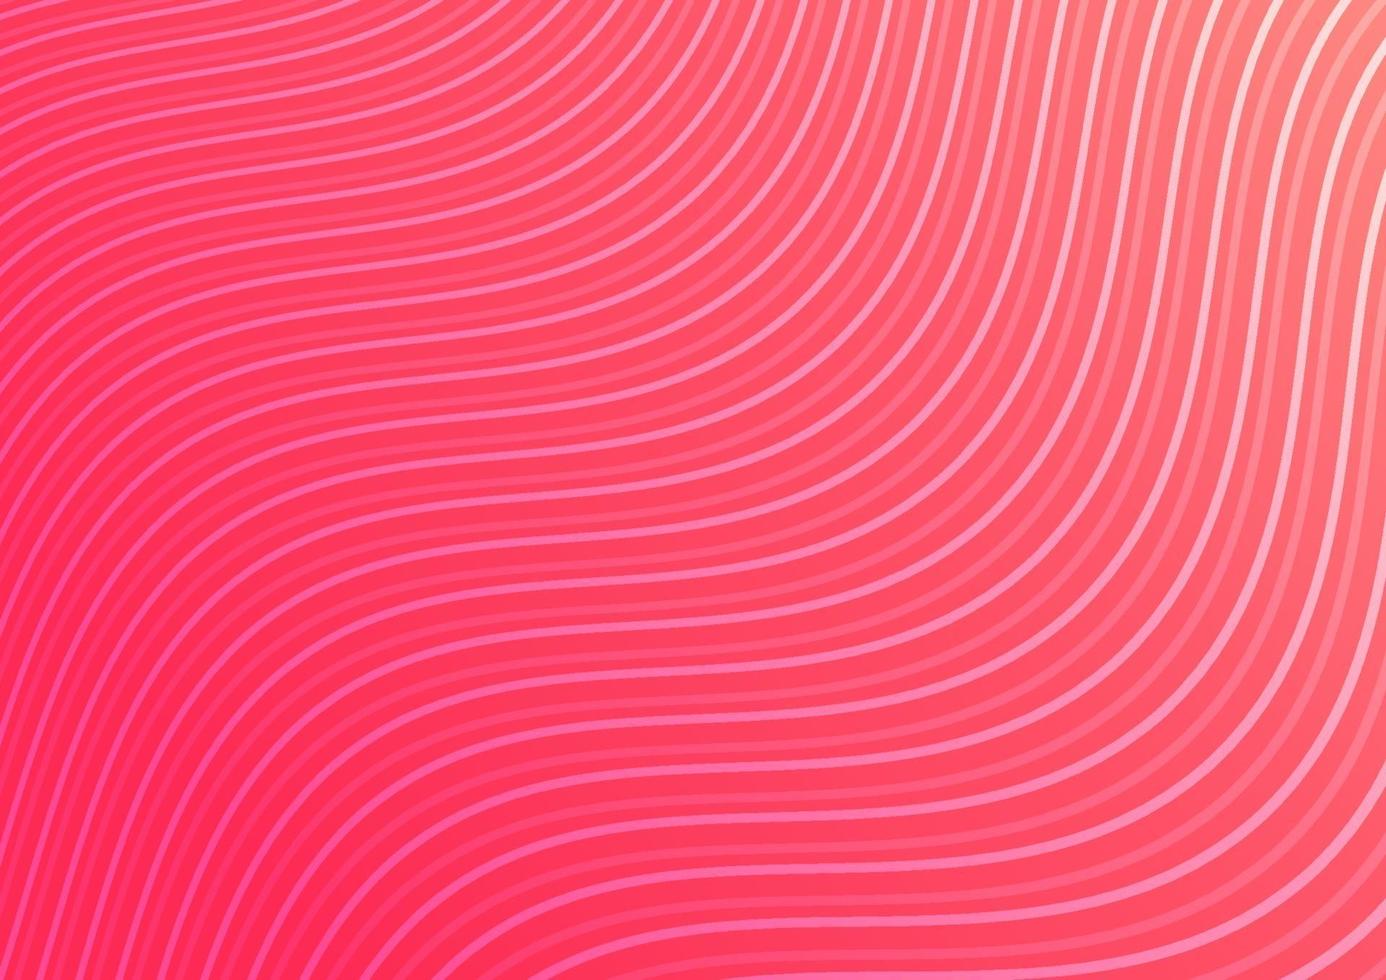 motif de lignes courbes abstraites vague rayée sur fond rose. vecteur